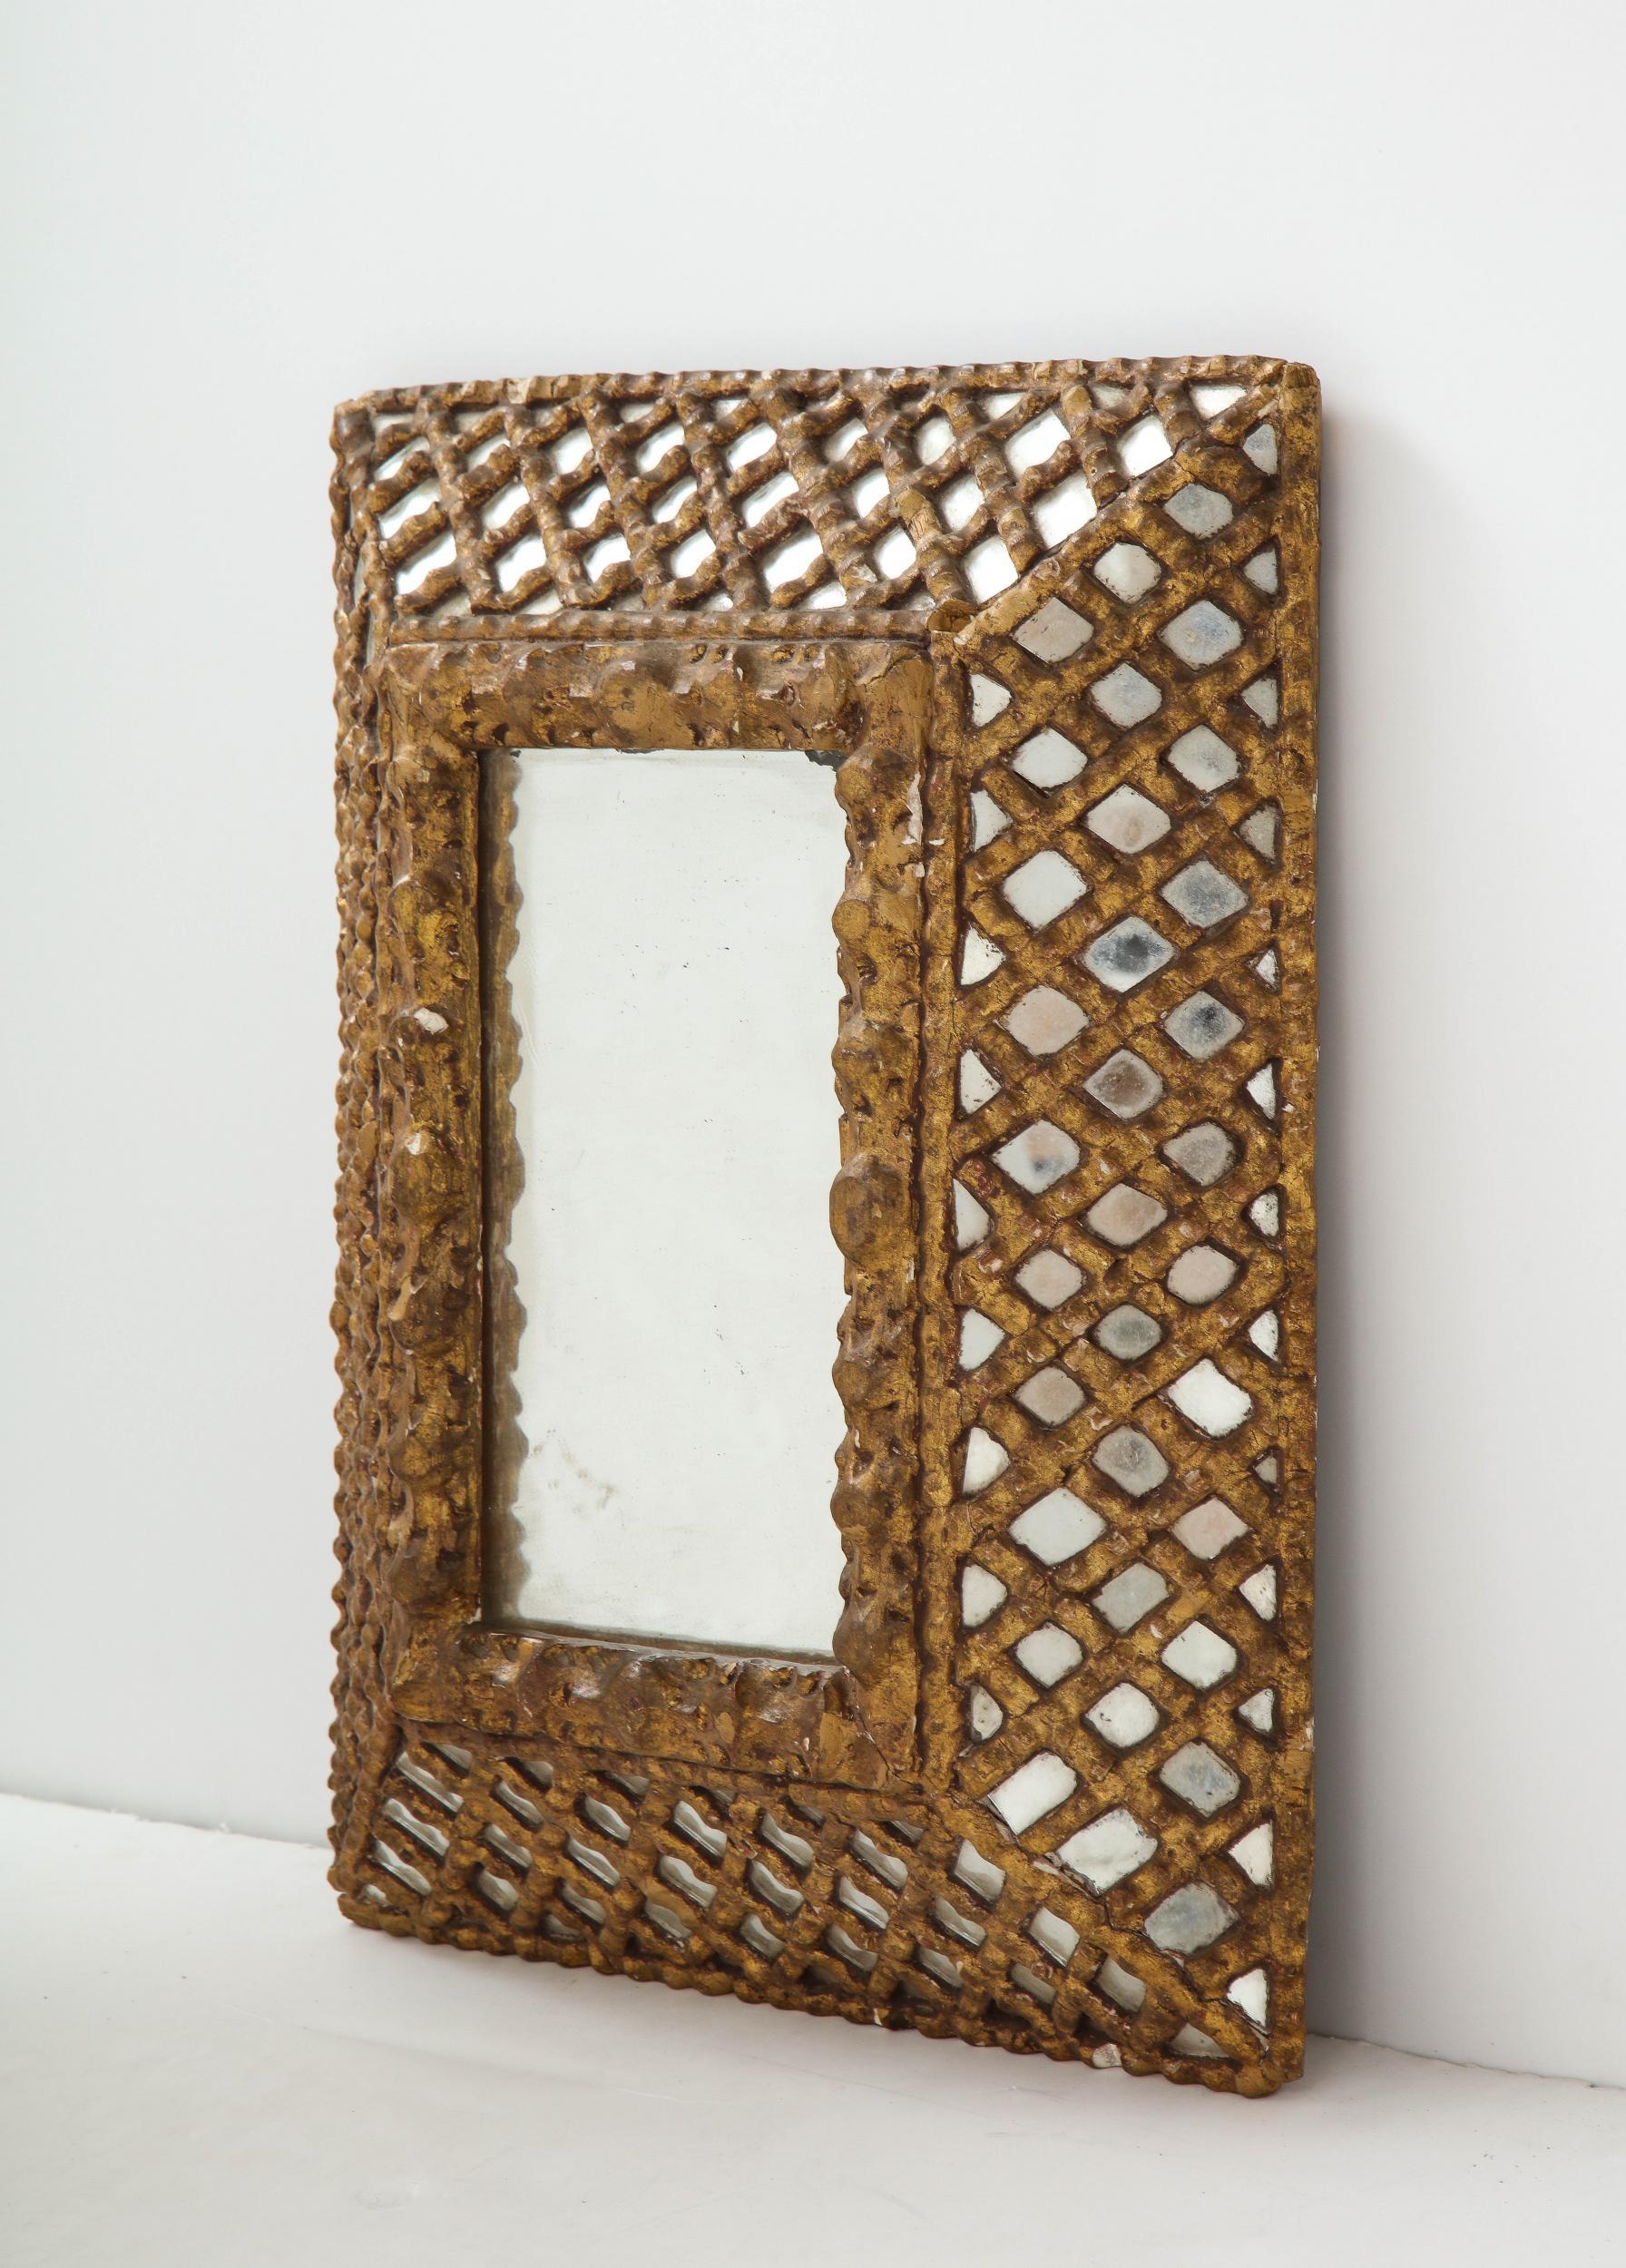 Vergoldeter indischer Spiegel aus dem frühen 20. Jahrhundert. 

Ein vergoldeter indischer Spiegel aus dem frühen 20. Jahrhundert mit quadratischen Ecken und einem tief geschnitzten floralen Innenrahmen. Der breite, gitterartige Rahmen bedeckt